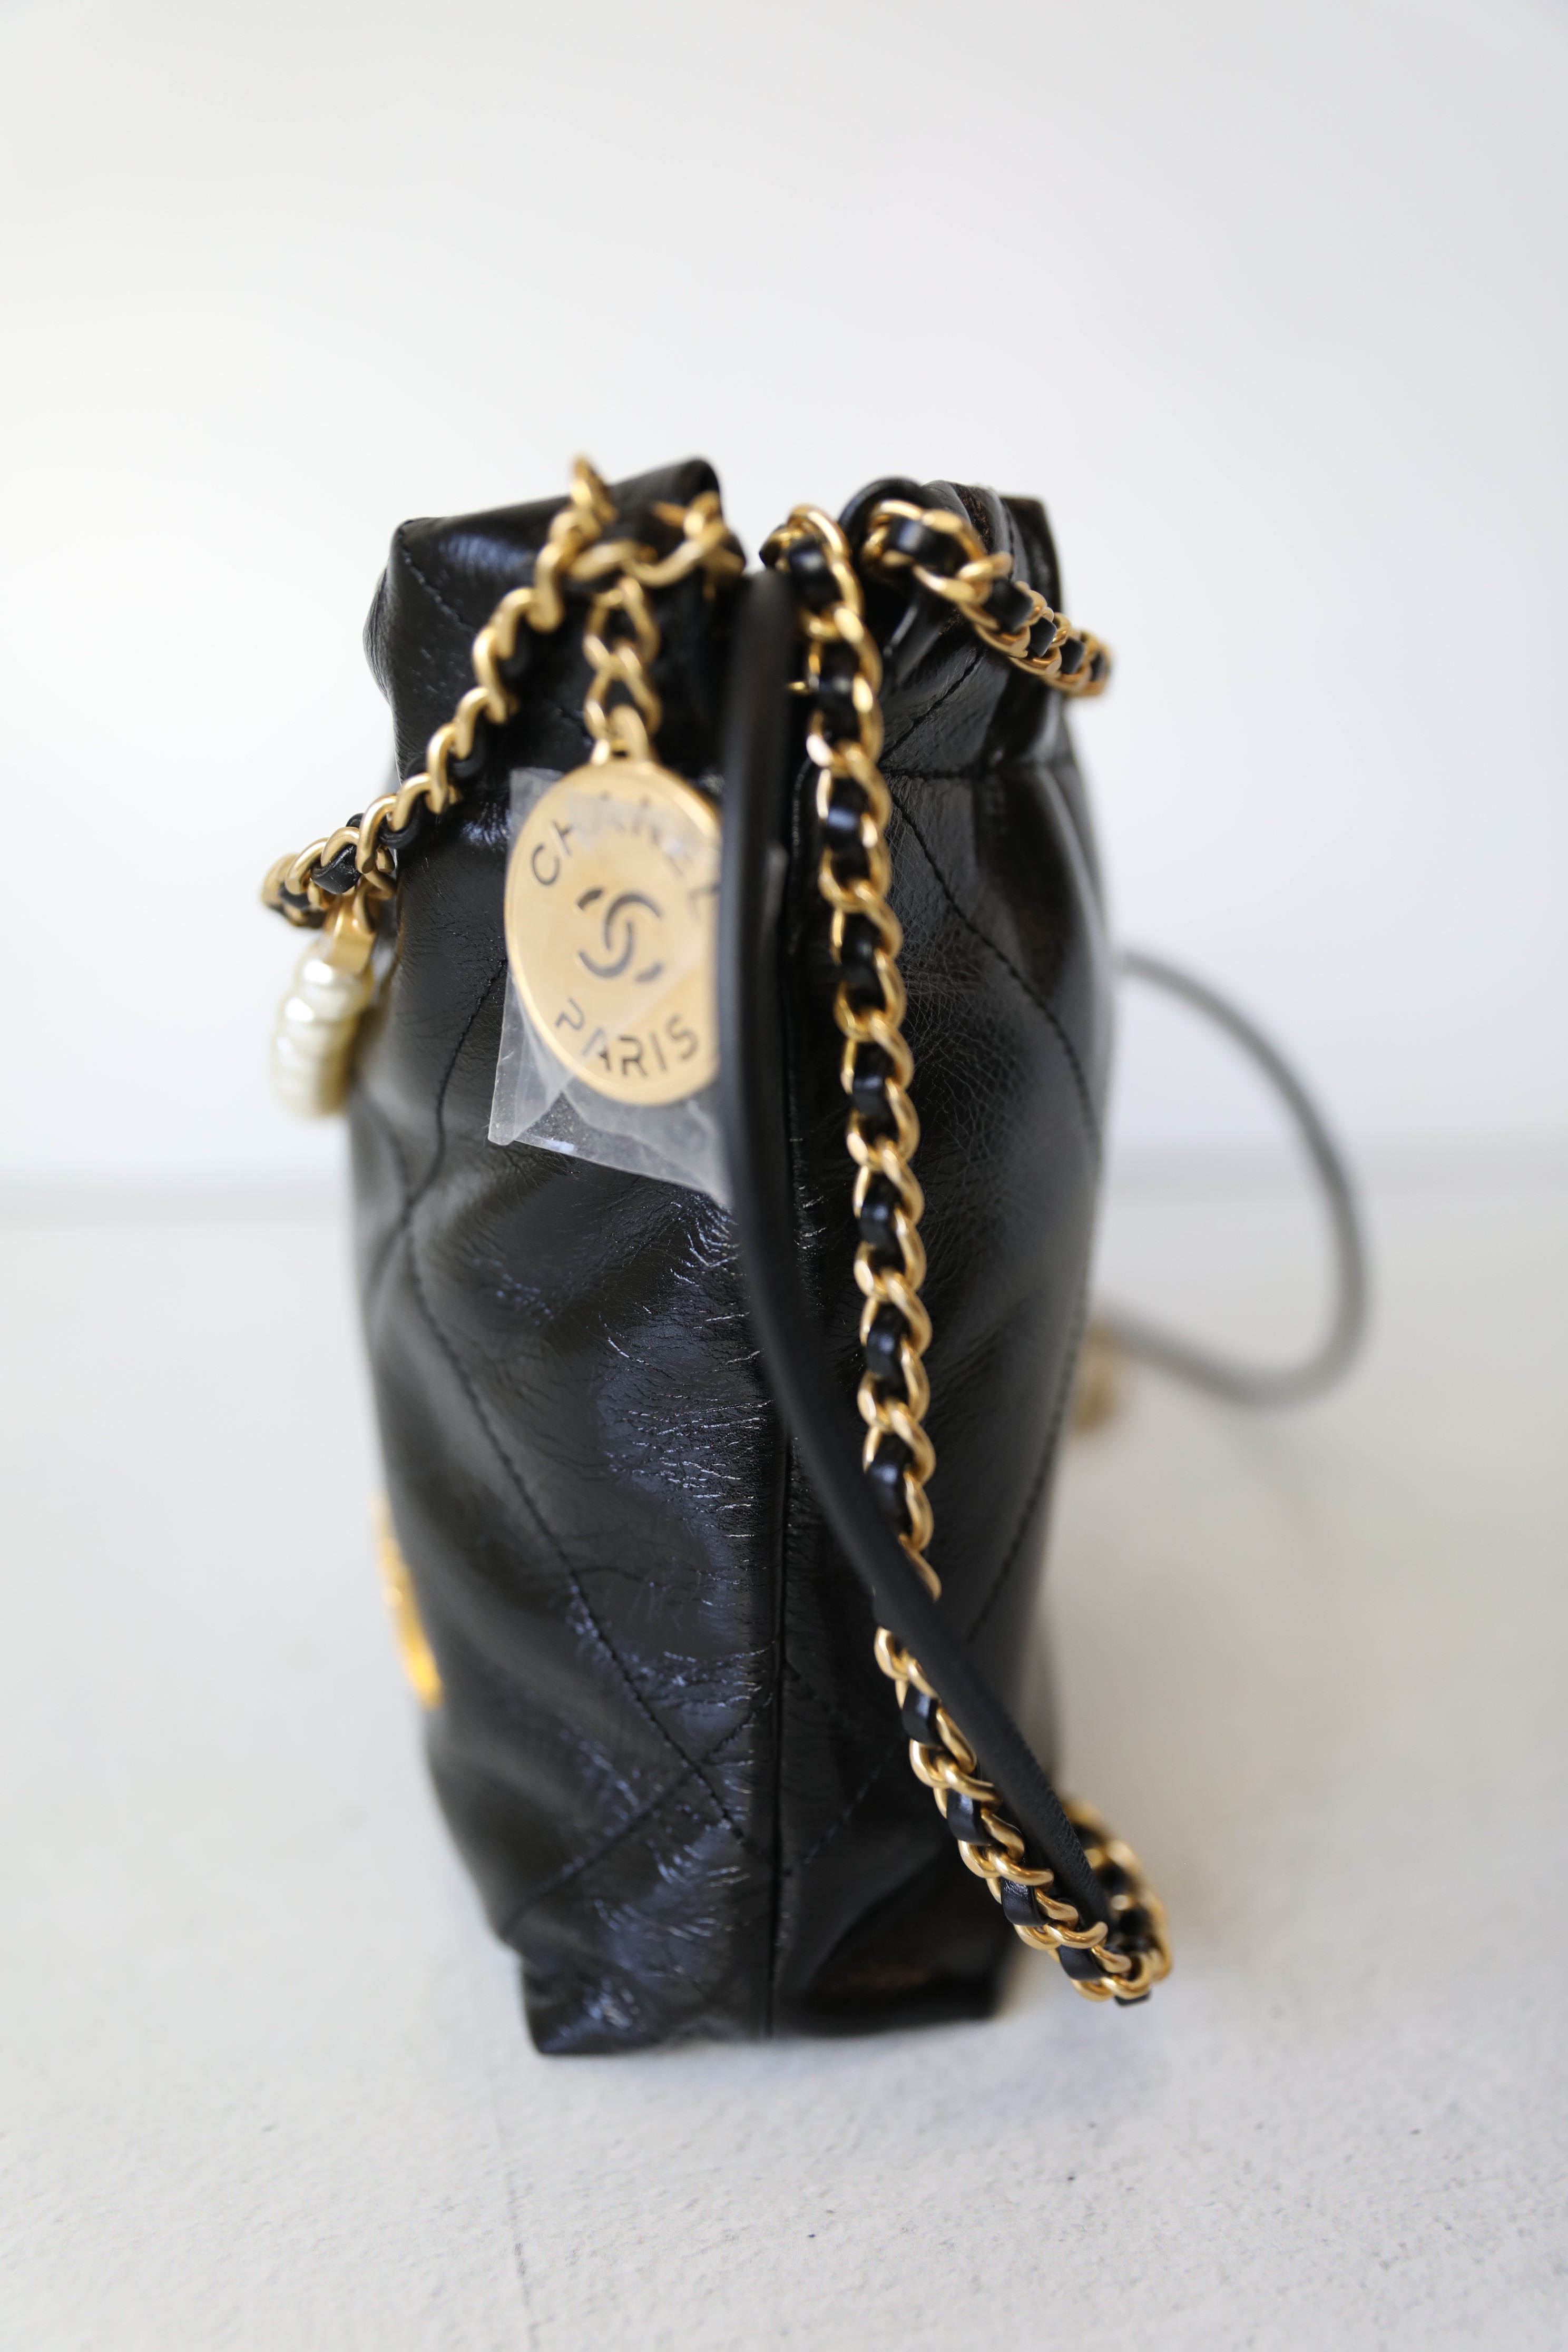 Chanel 22 Camel Handbag – MILNY PARLON